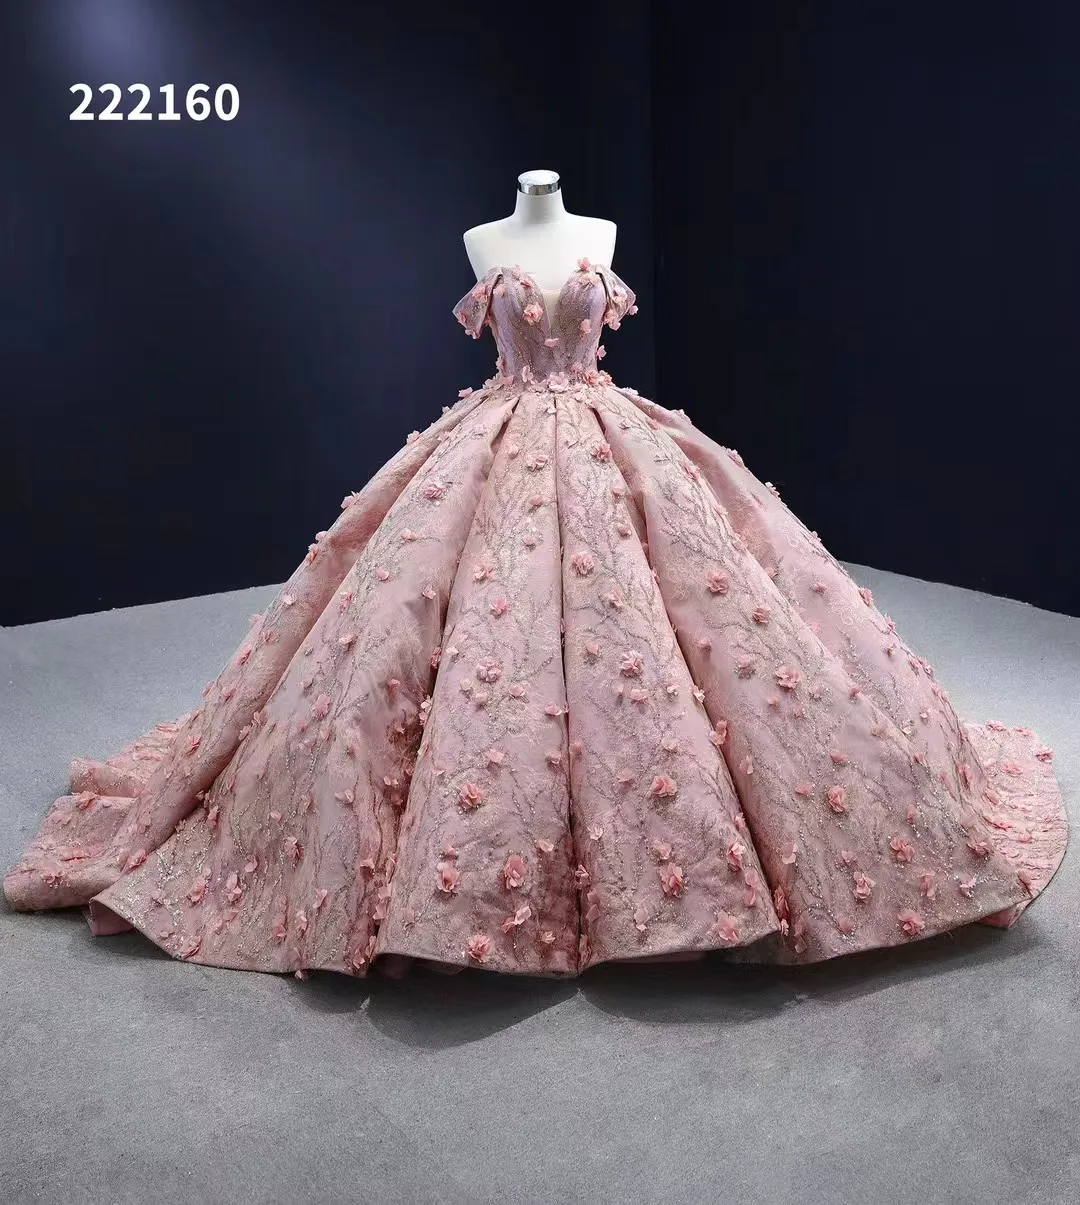 Цветочные вечерние платья Розовое бальное платье с открытыми плечами Милые женские платья SM222160